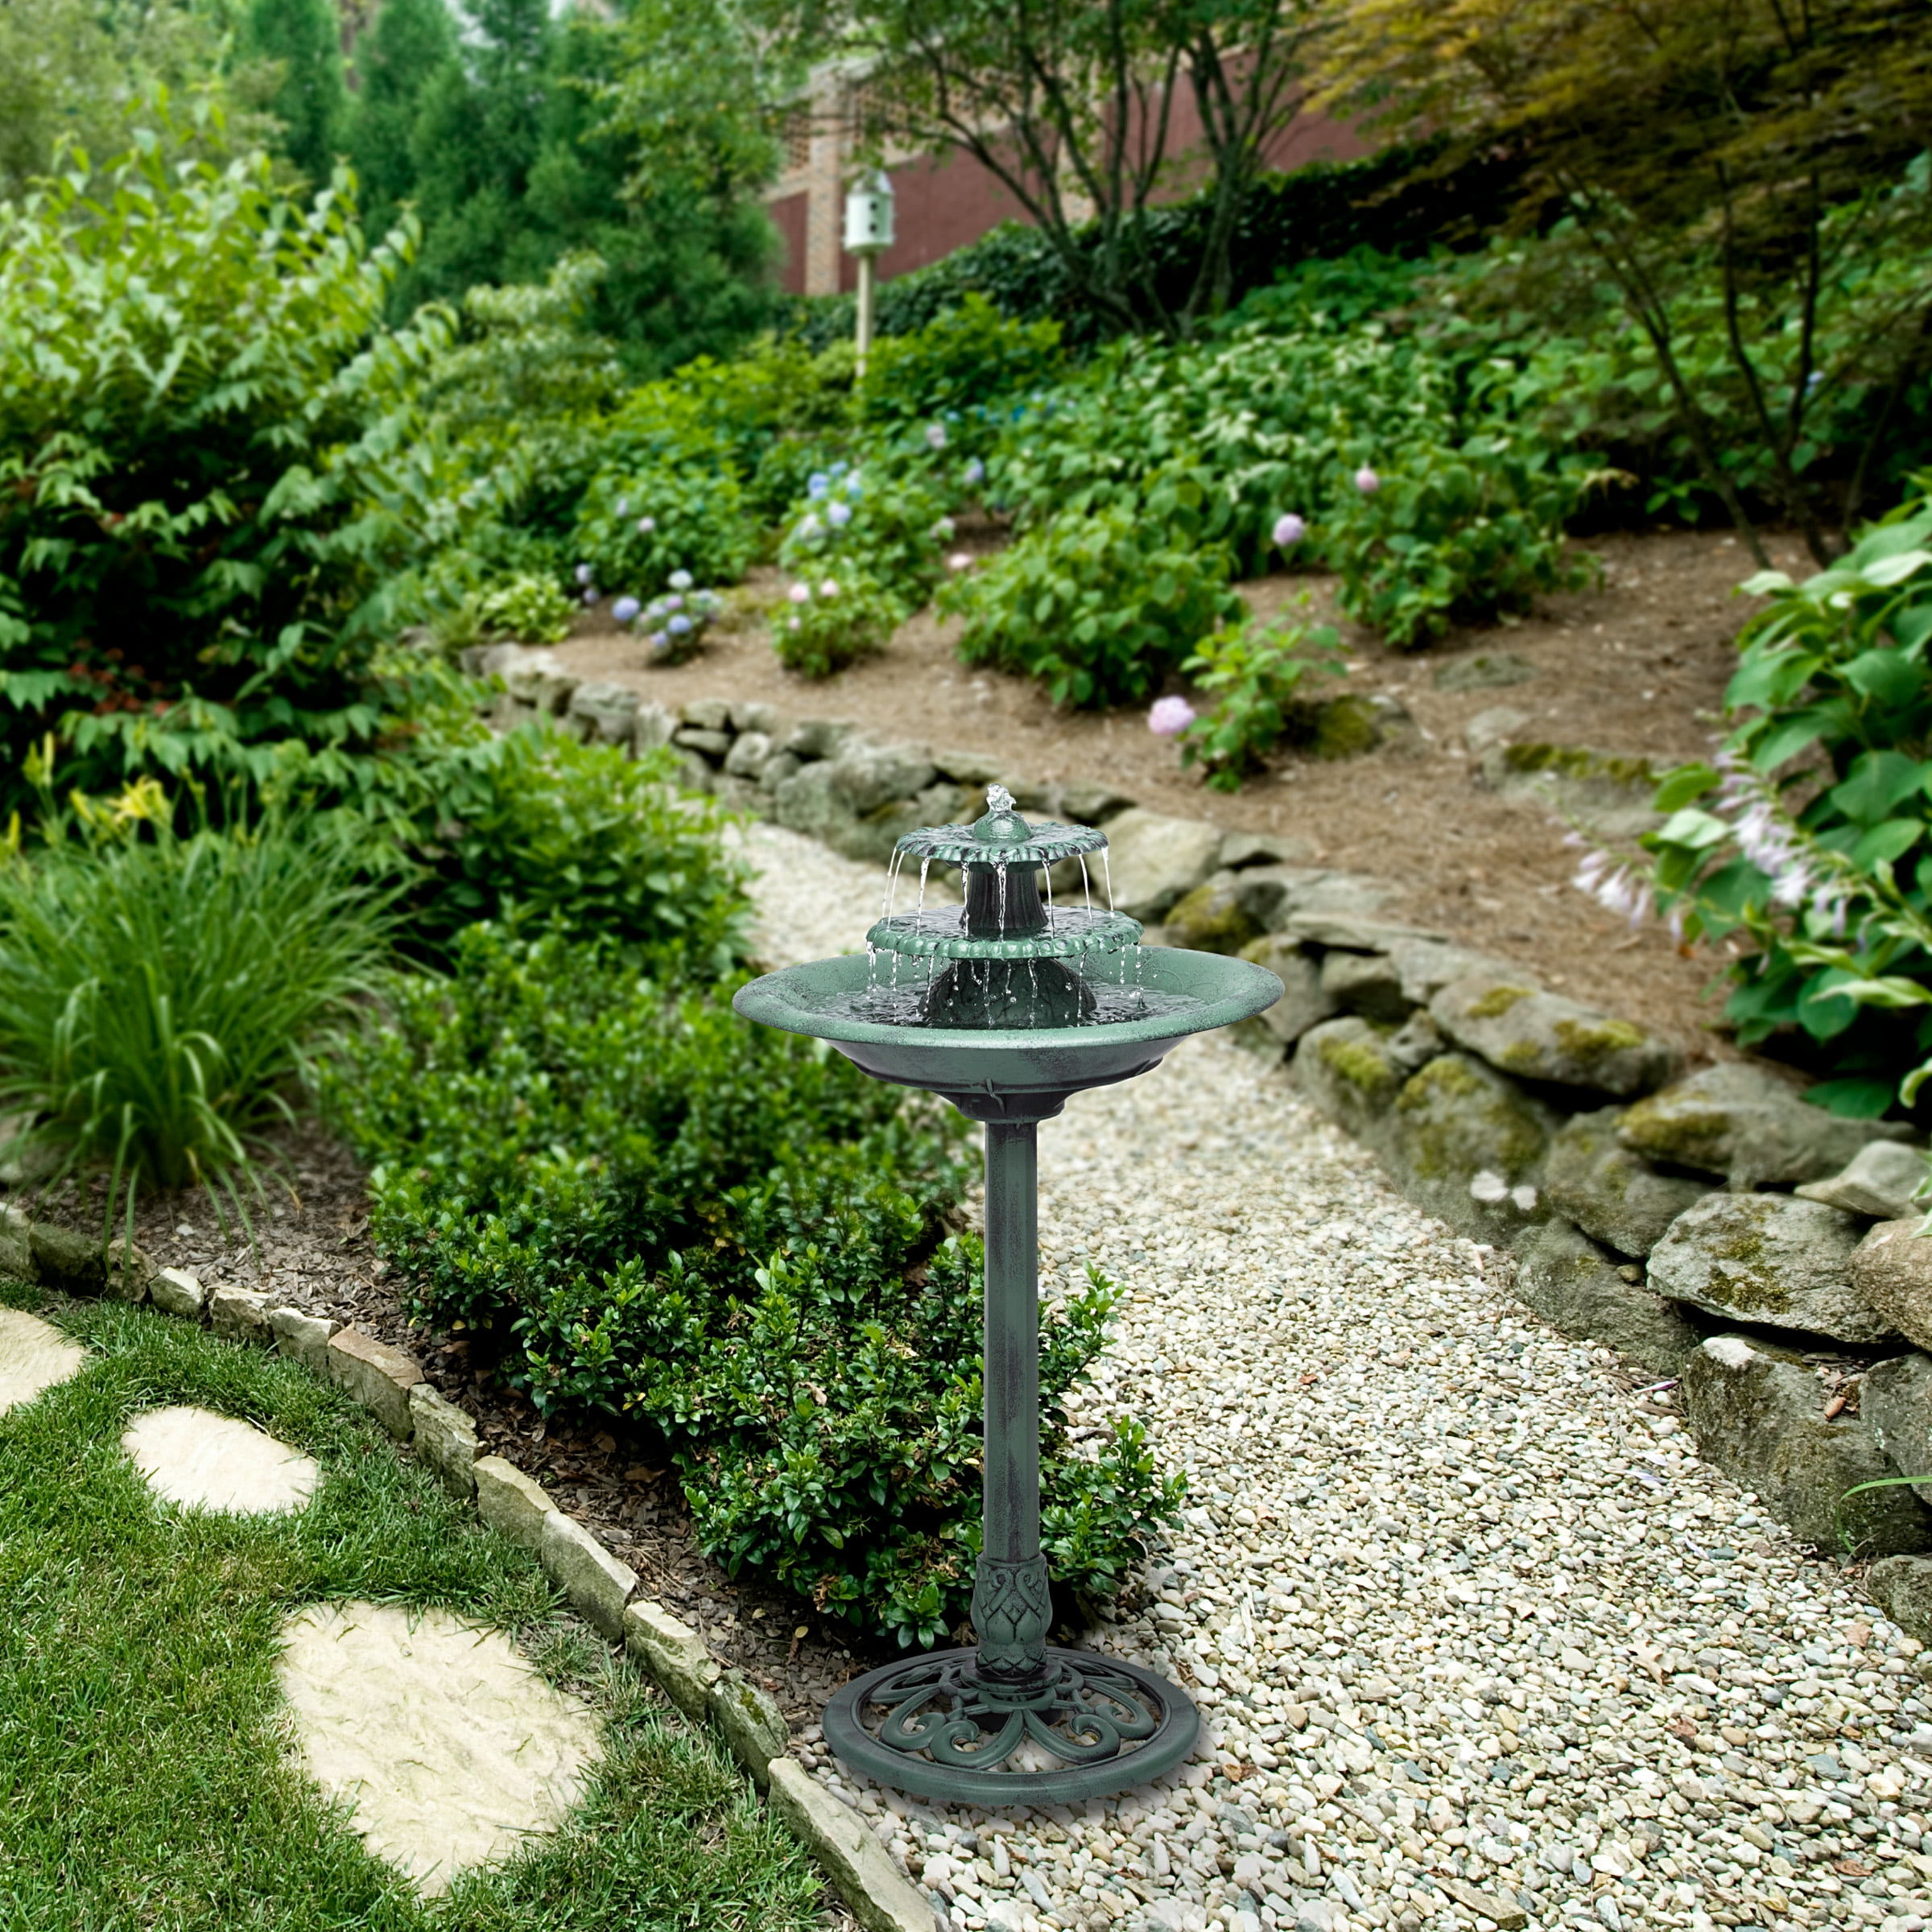 3 Tier Pedestal Fountain Bird Bath W/ Pump Water Patio Decor Garden Outdoor 